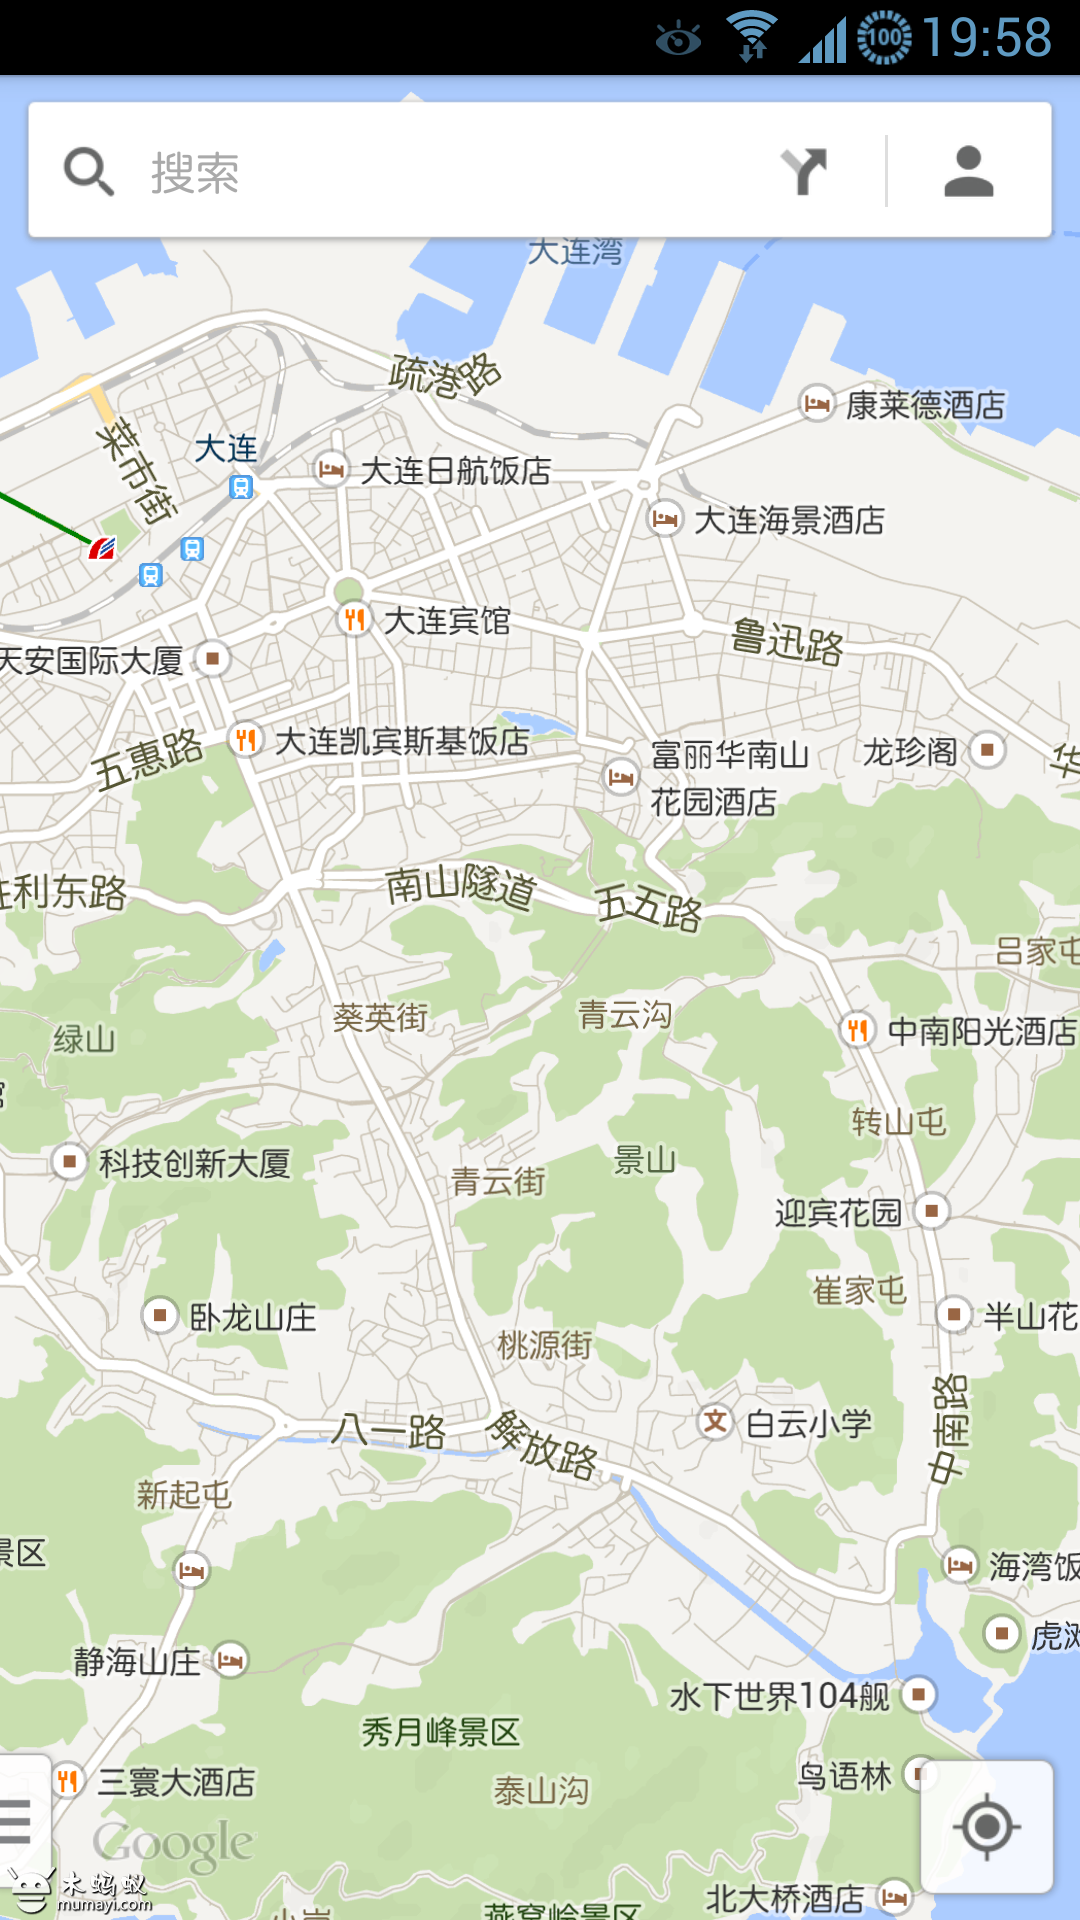 地图谷歌高清手机版_谷歌地图高清卫星地图手机版下载_谷歌街景地图手机版